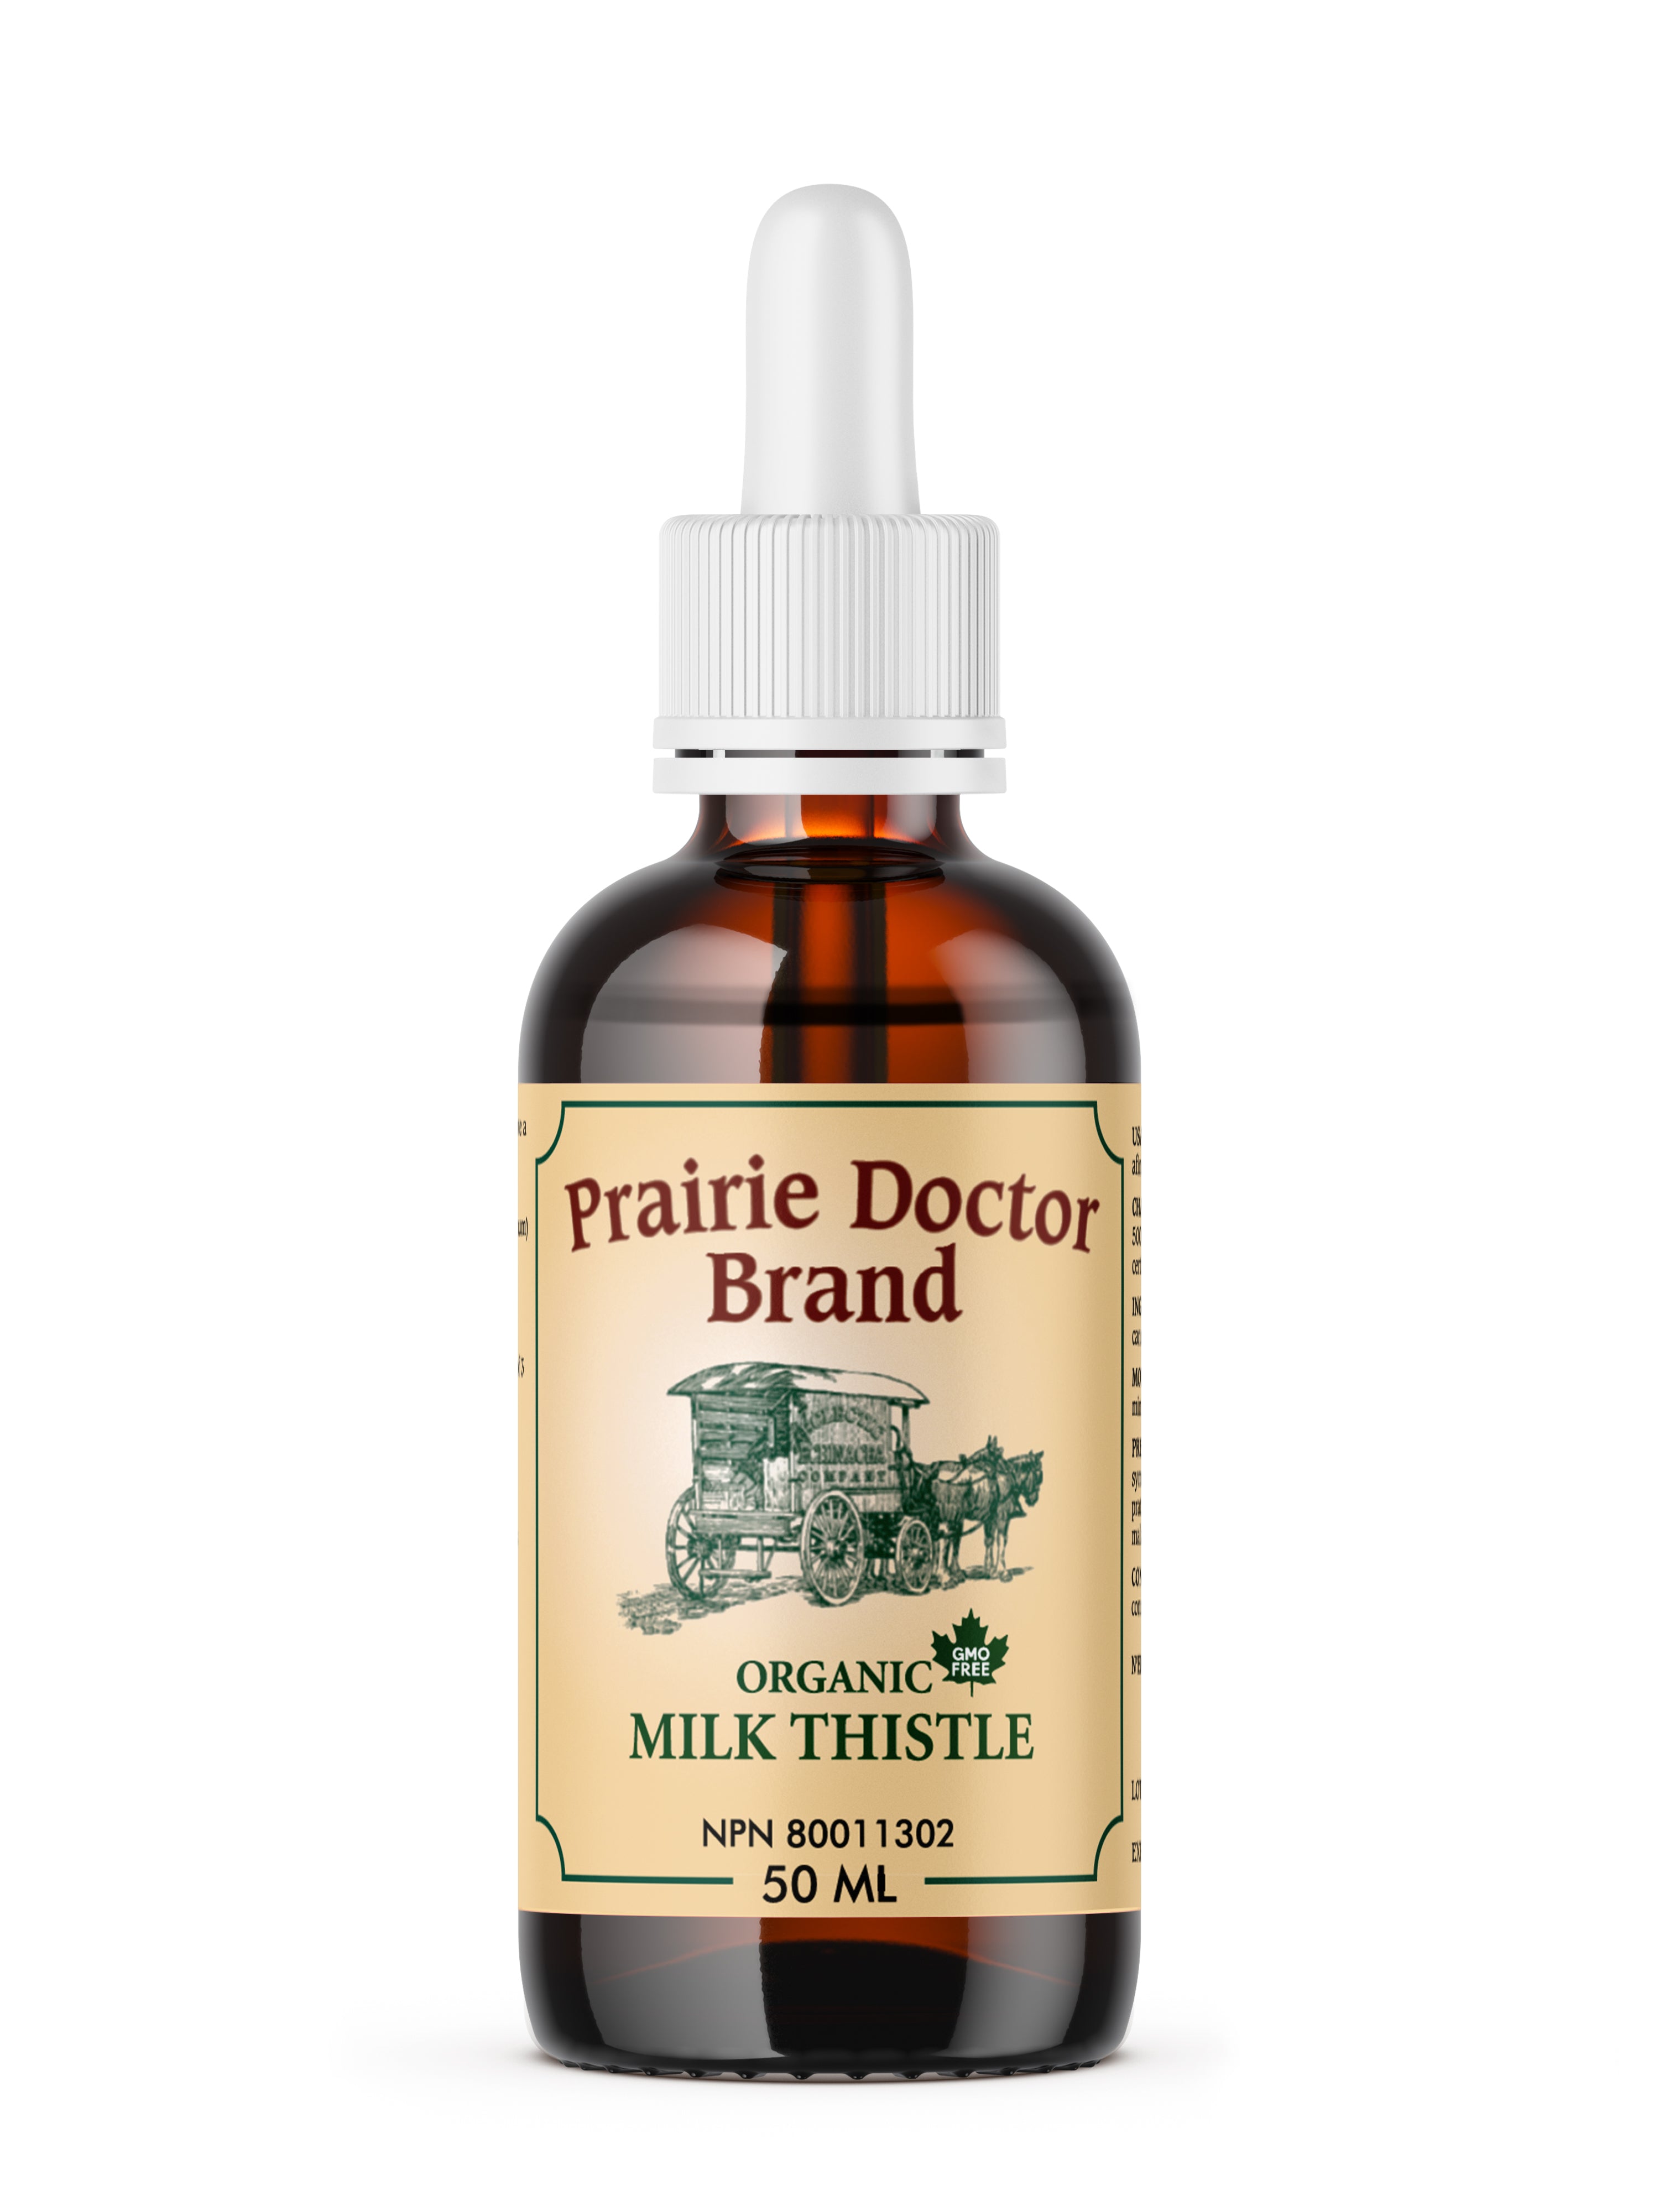 Prairie Doctor Milk Thistle (50ml) - Lifestyle Markets